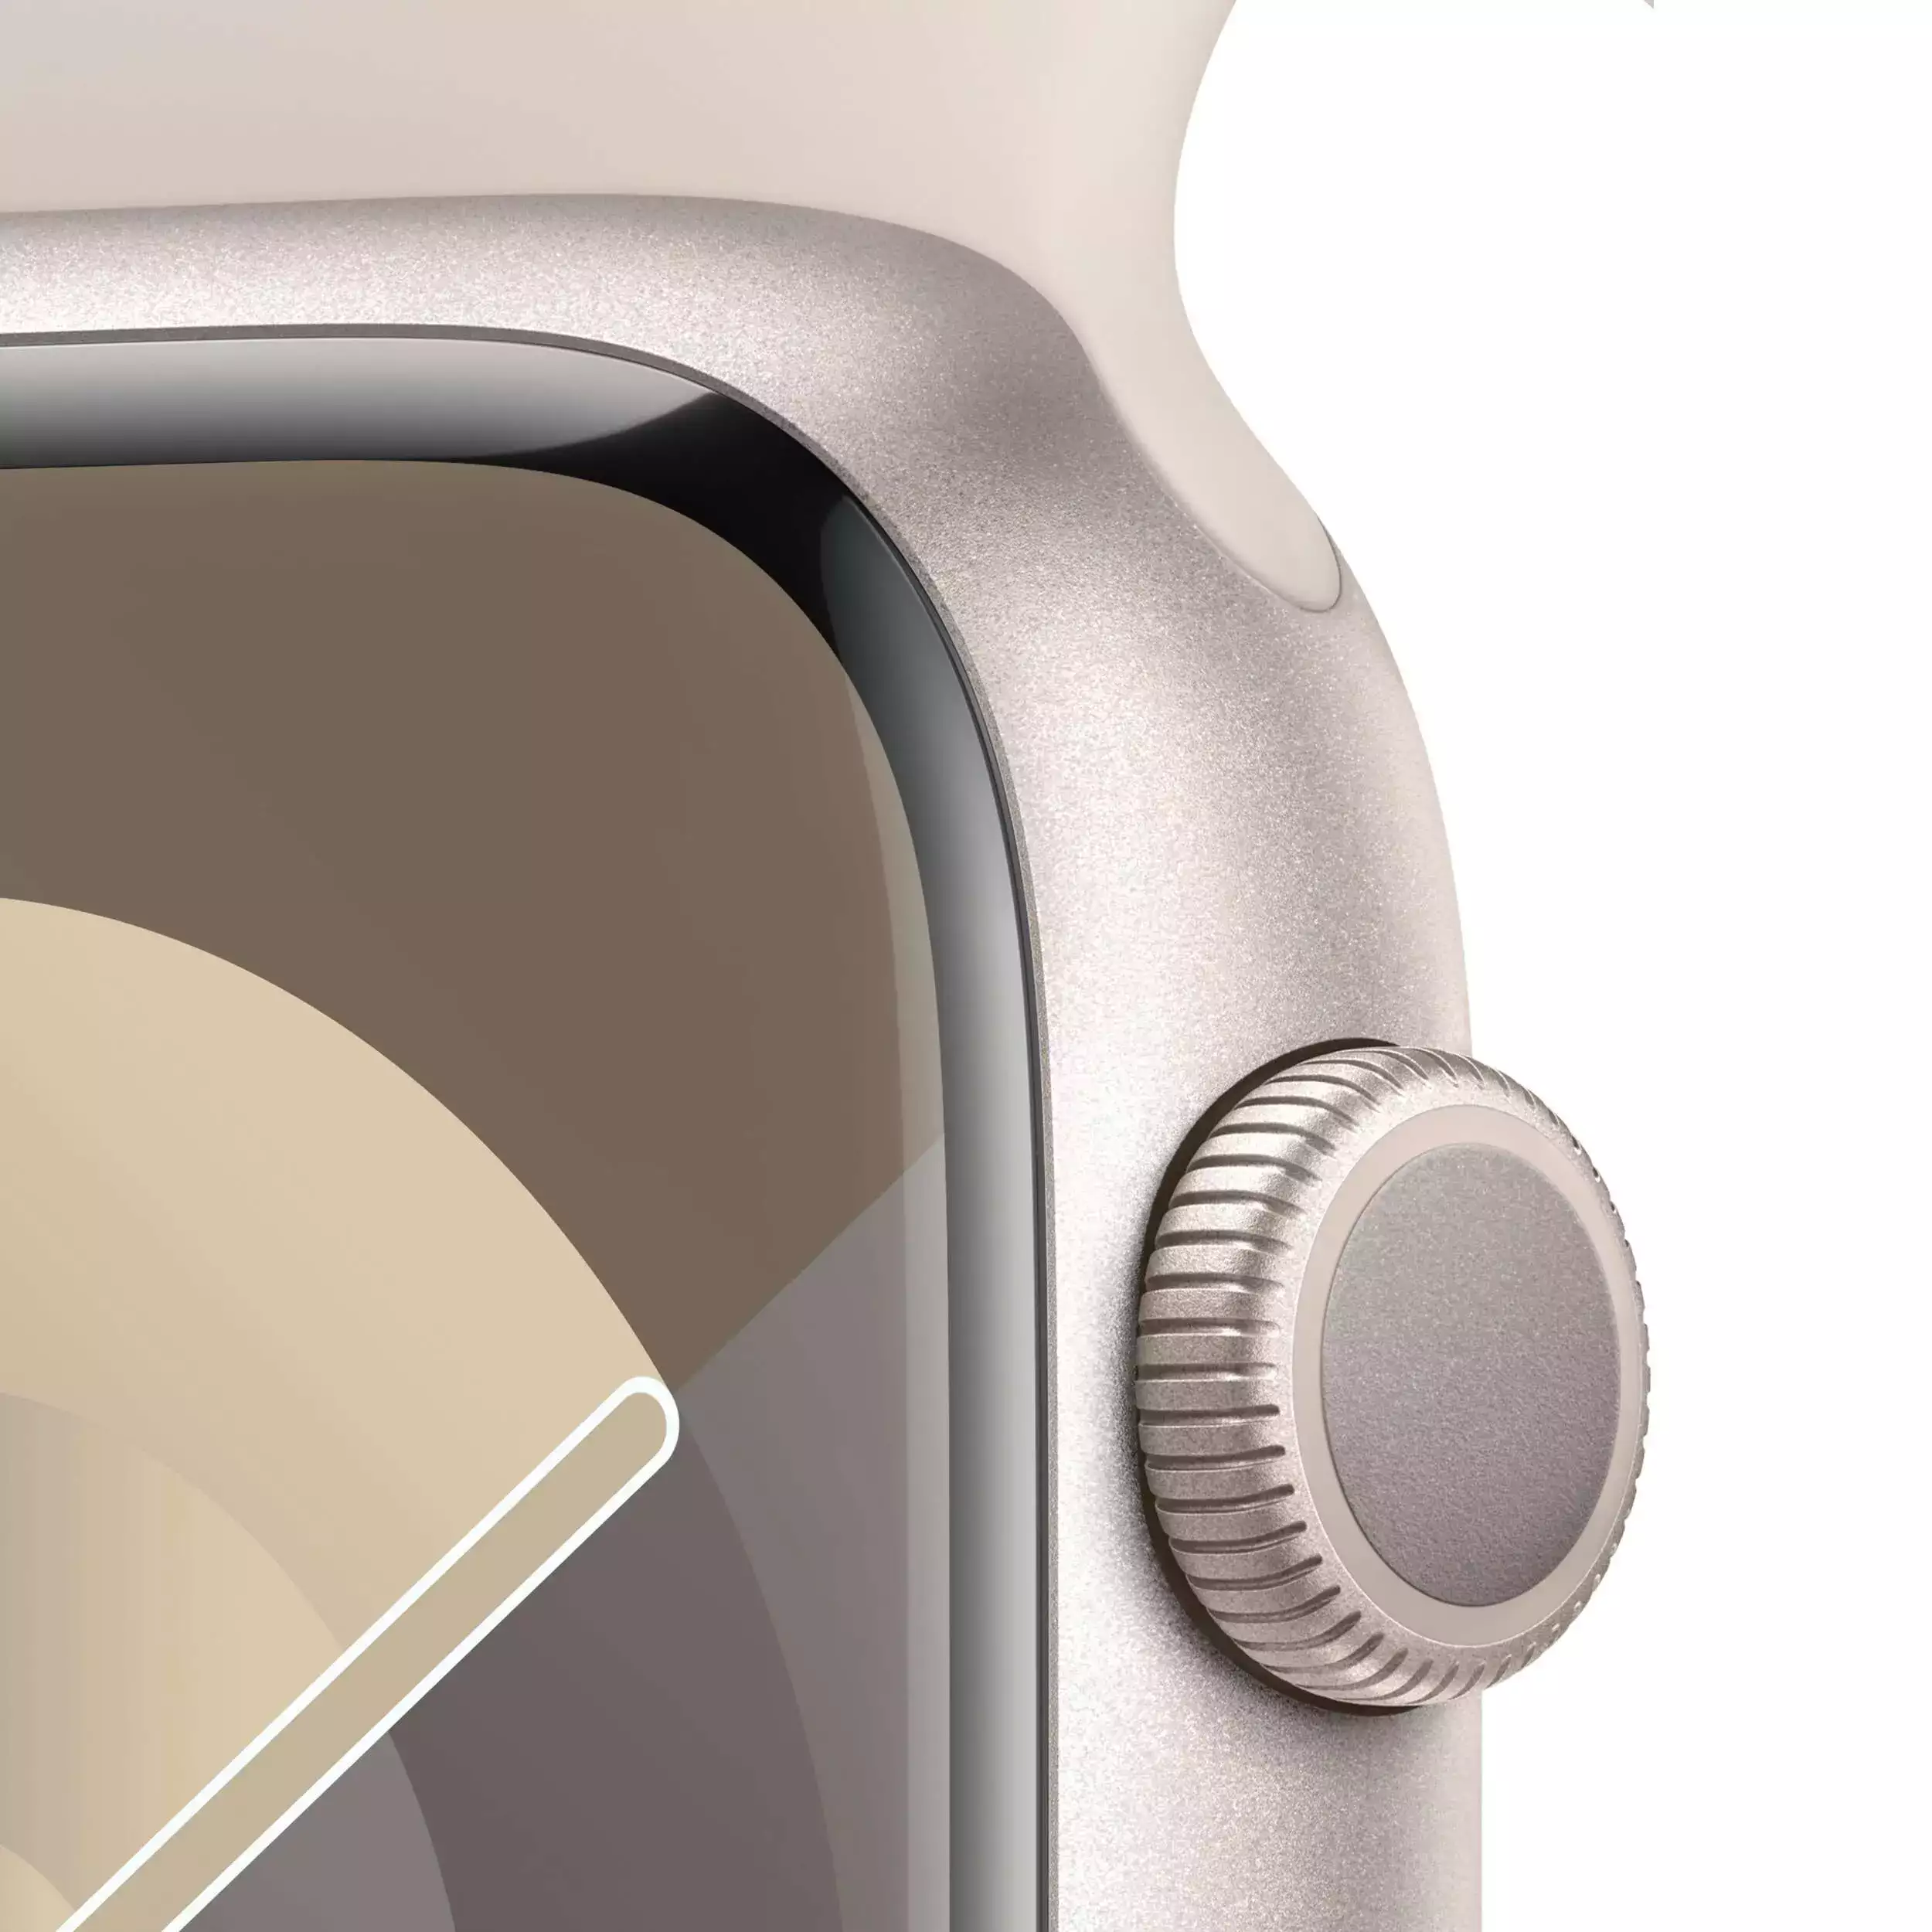 Apple Watch Series 9 GPS 45mm Yıldız Işığı Alüminyum Kasa Yıldız Işığı Spor Kordon M/L MR973TU/A